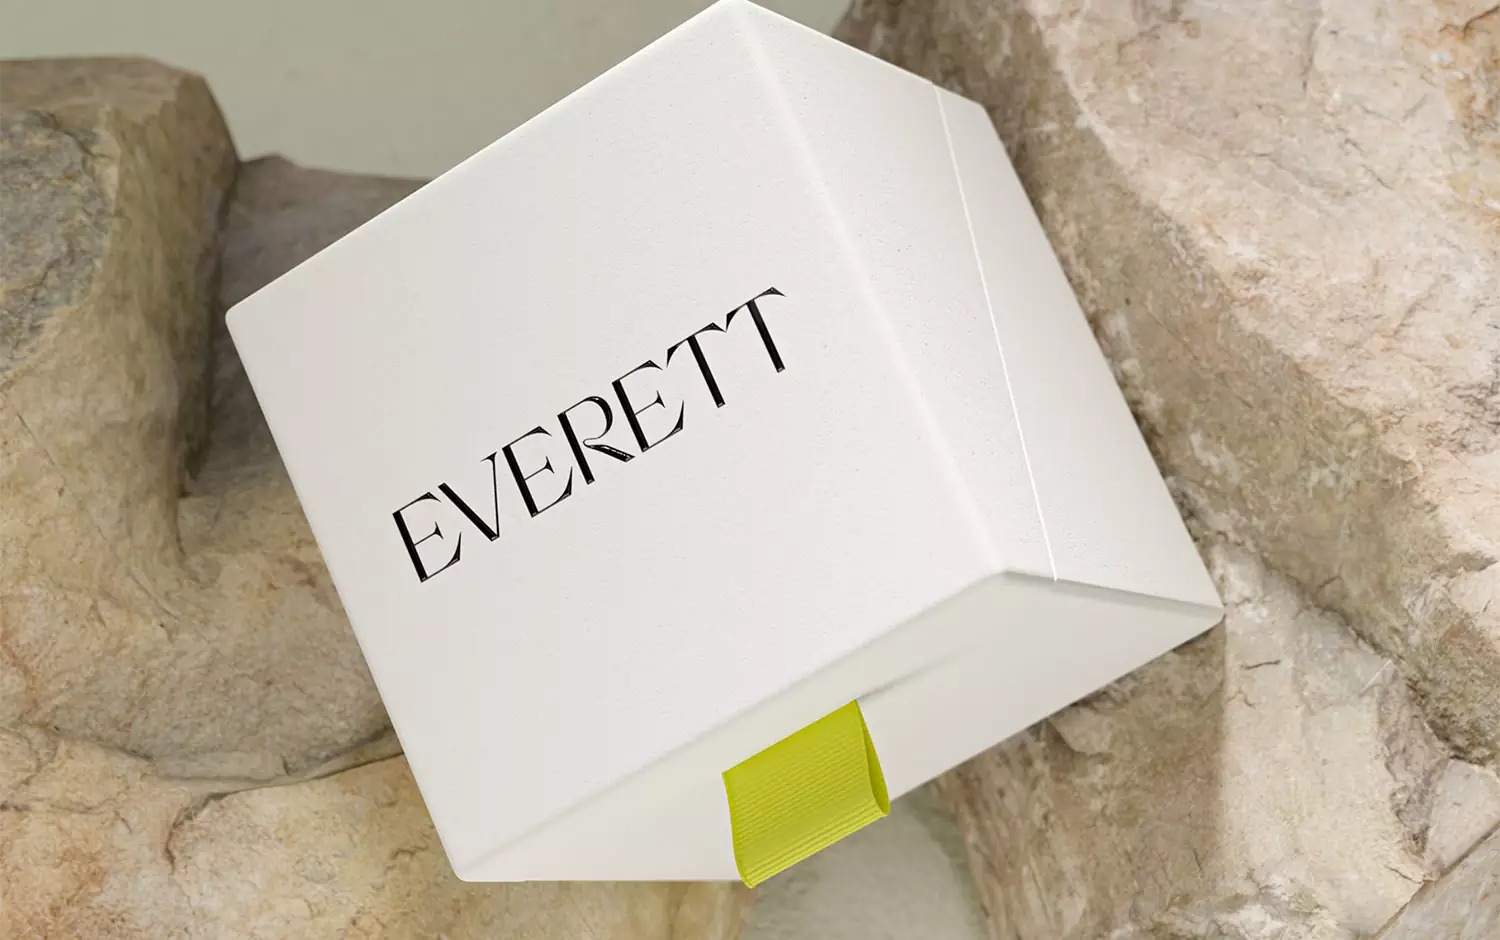 Everett珠宝品牌形象设计